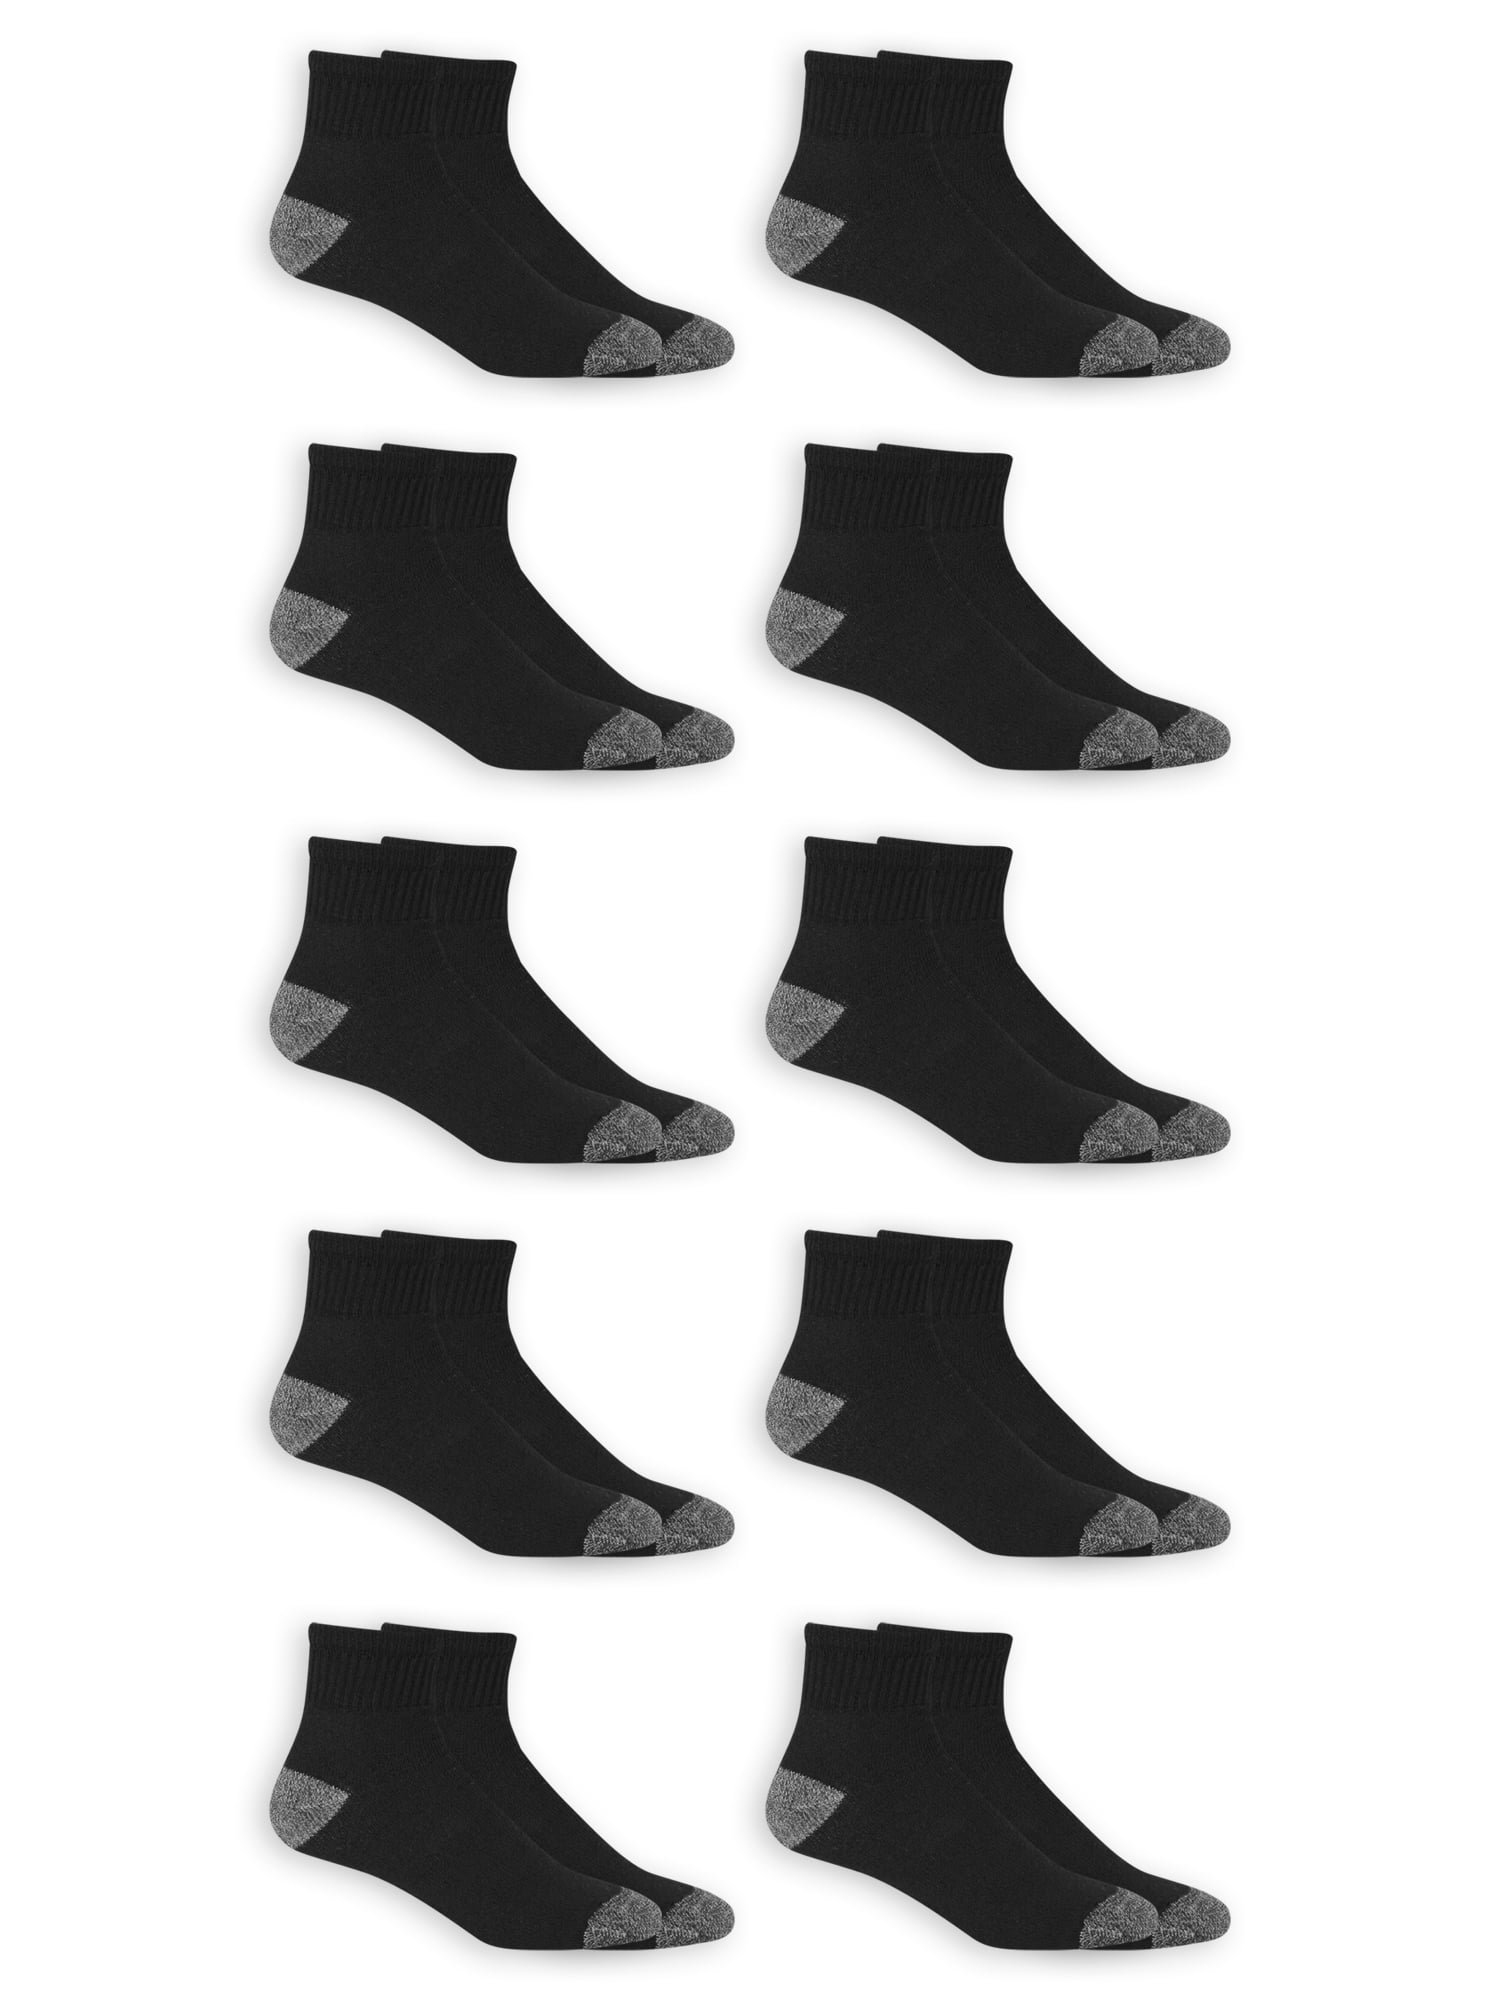 Men's Ankle Socks, 10 Pack